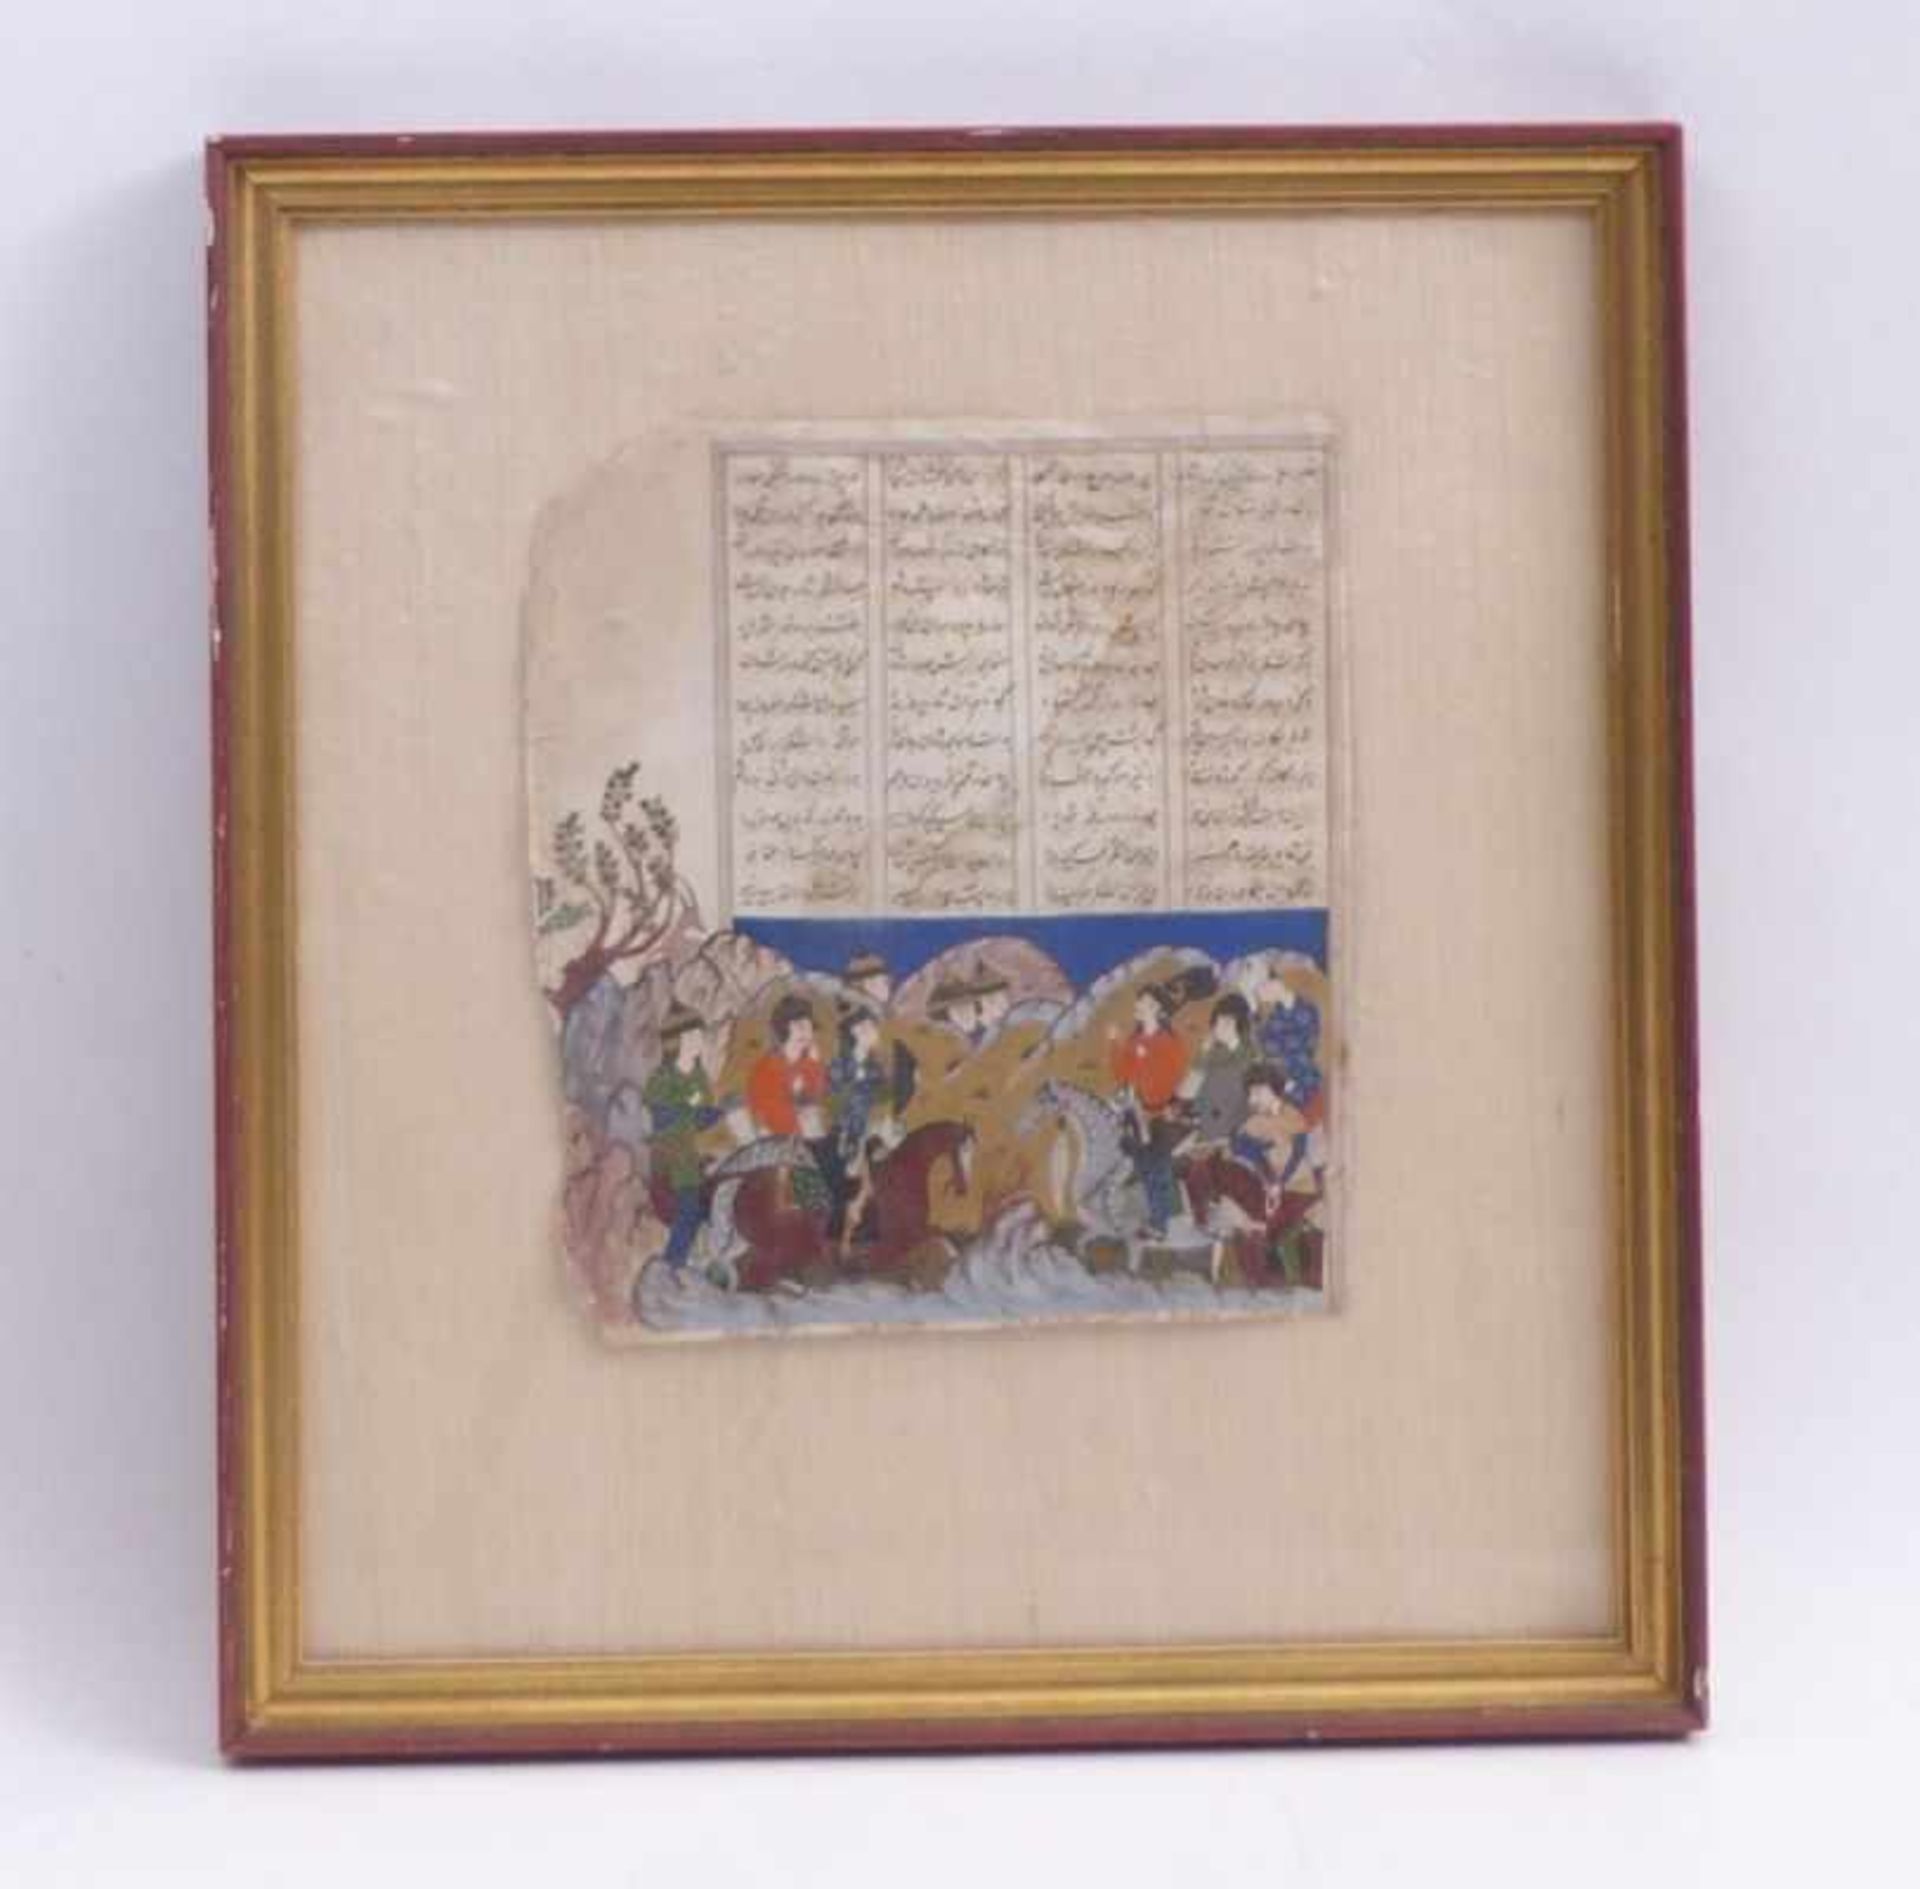 Indo-persische MiniaturAus einer Schahname-Handschrift (Königsbuch)Begegnung in den Bergen, - Bild 2 aus 2